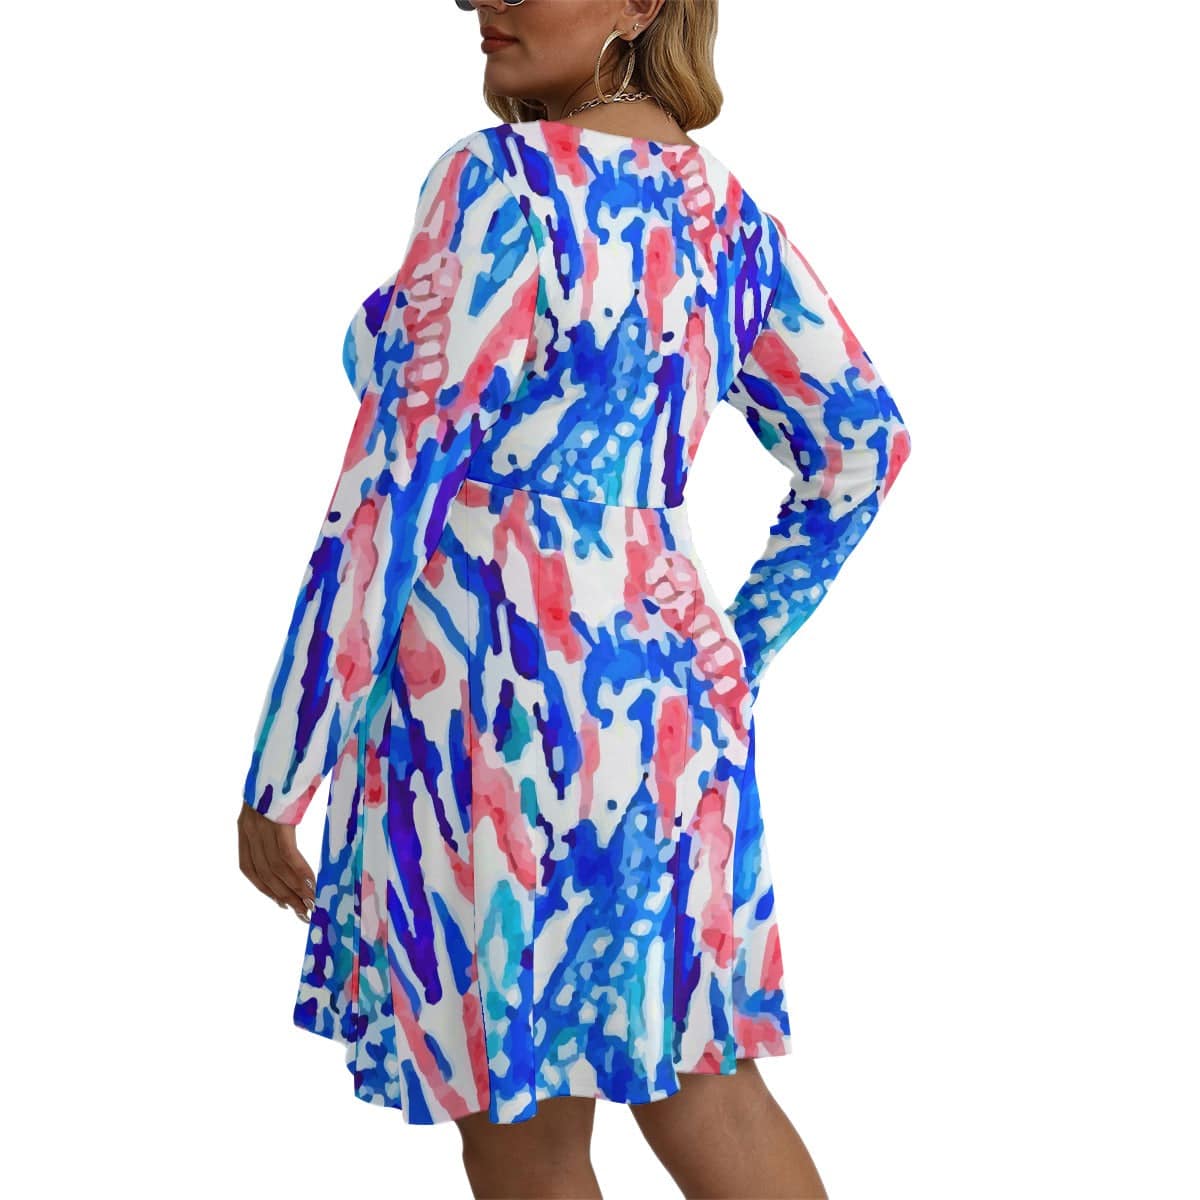 Yoycol Plus Dress Multi Print Women's Long Sleeve Dress - L-5XL